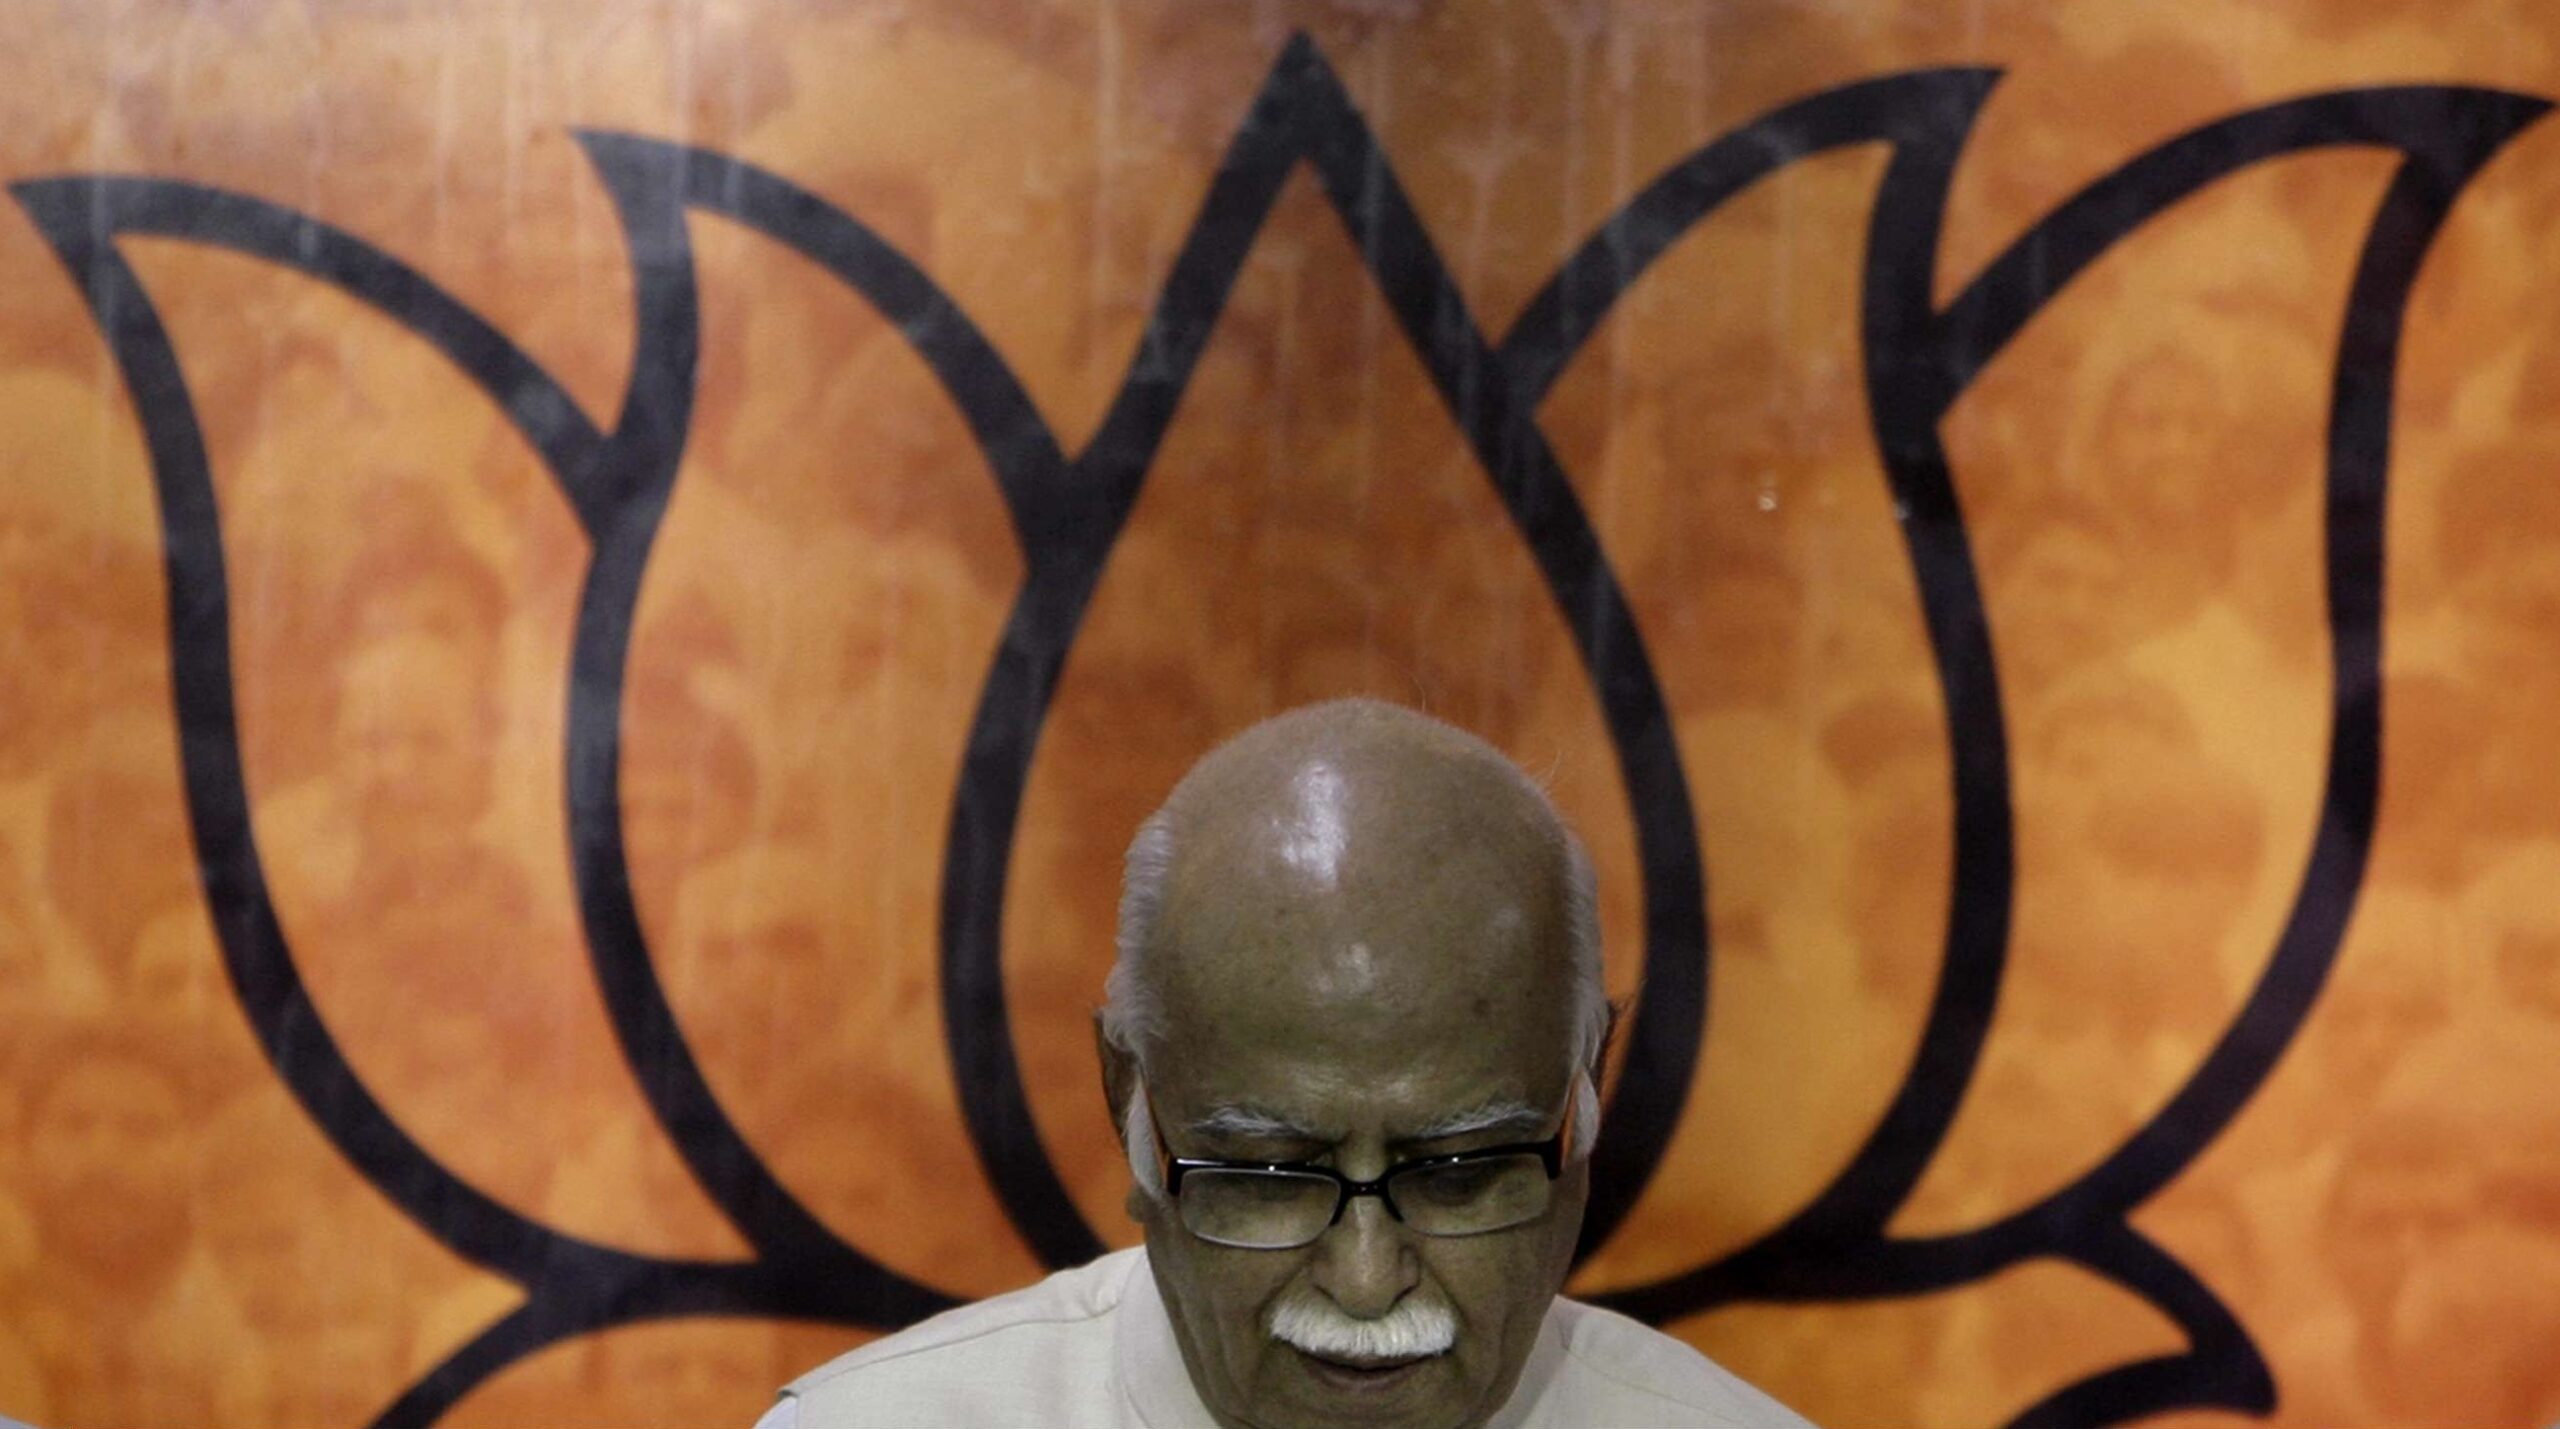 Le leader du Bharatiya Janata Party (BJP), alors principal parti d'opposition en Inde, Lal Krishna Advani, s'exprime lors d'une conférence de presse à New Delhi le mercredi 23 juillet 2008. Derrière lui, le symbole du parti : le lotus. © AP Photo/Manish Swarup